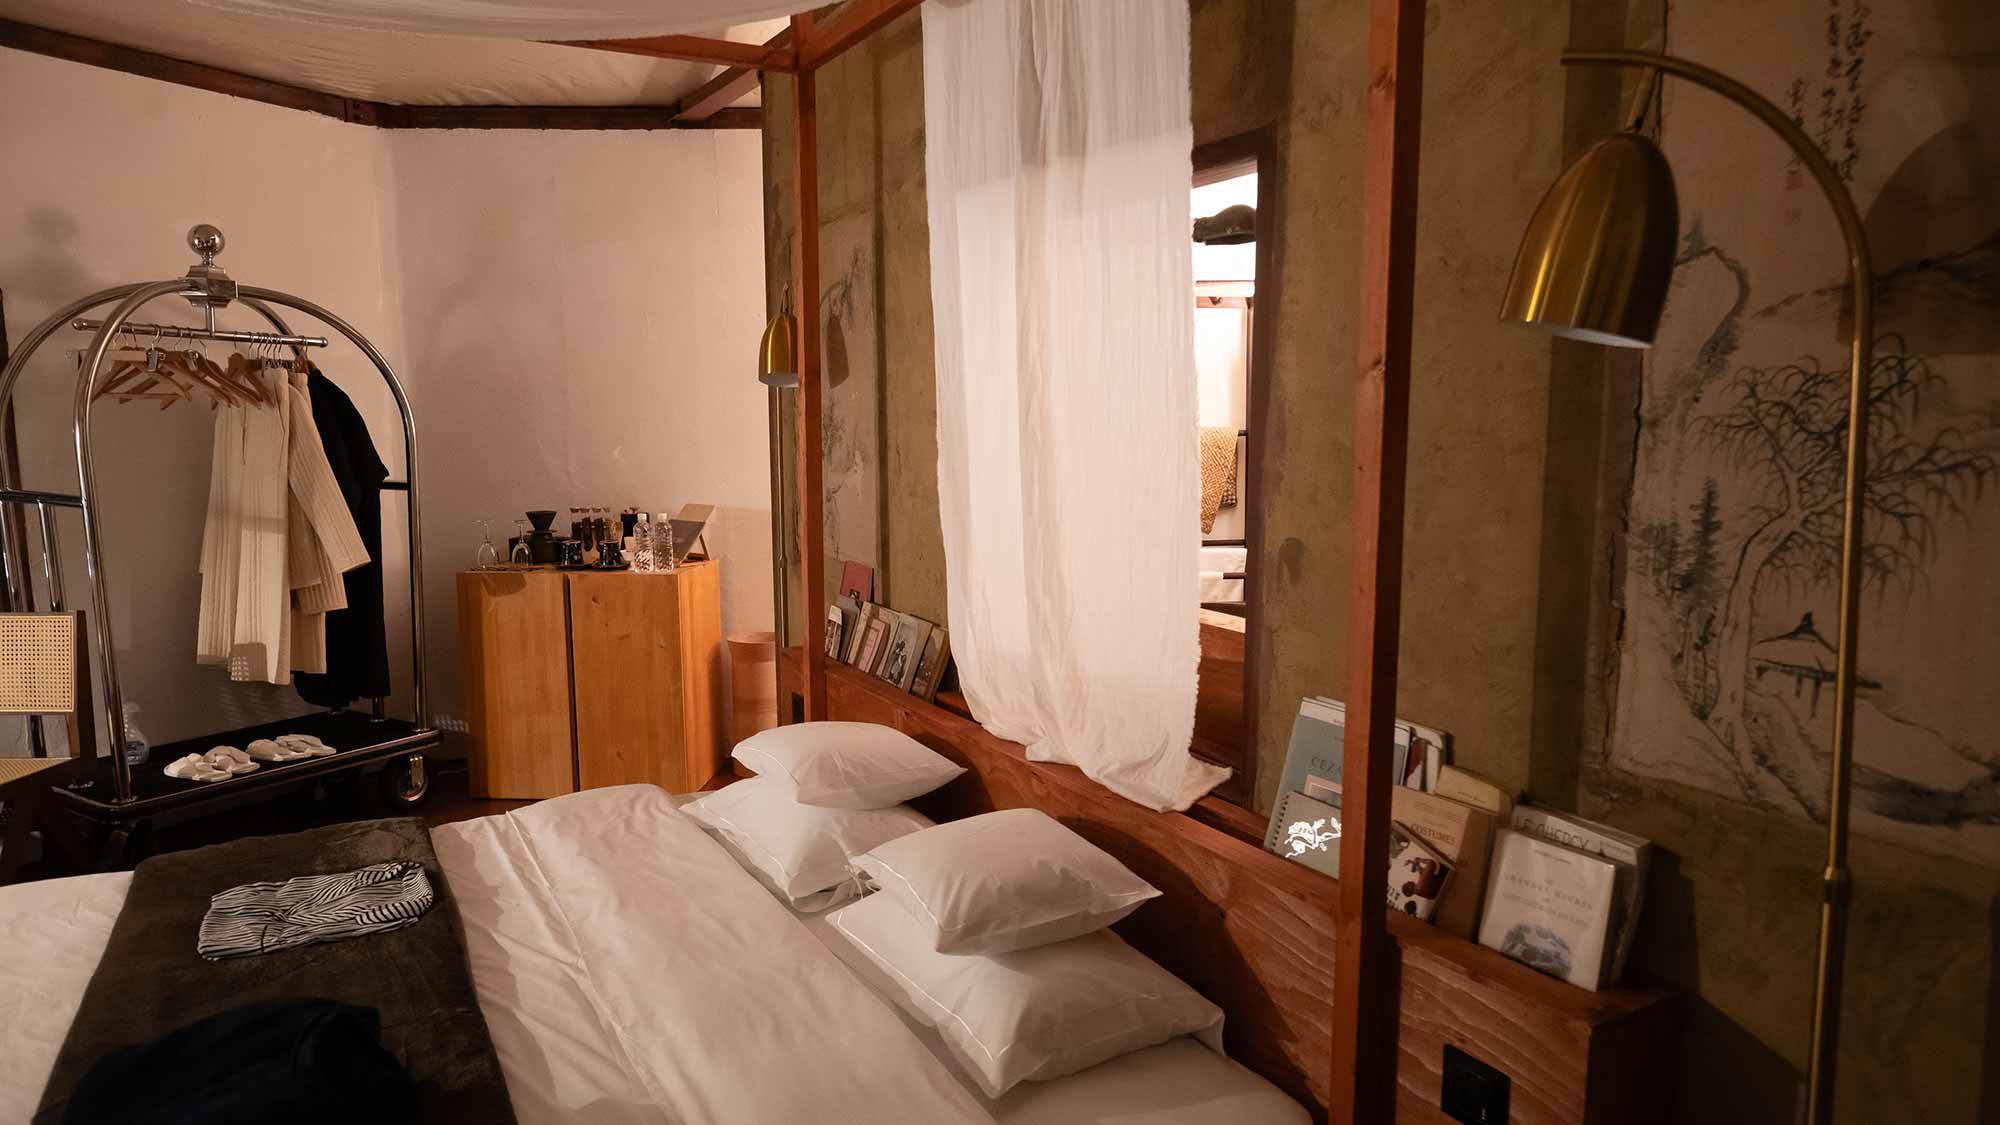 ・【コモレビ】日本の古道具や近代的な照明を使用したお部屋です